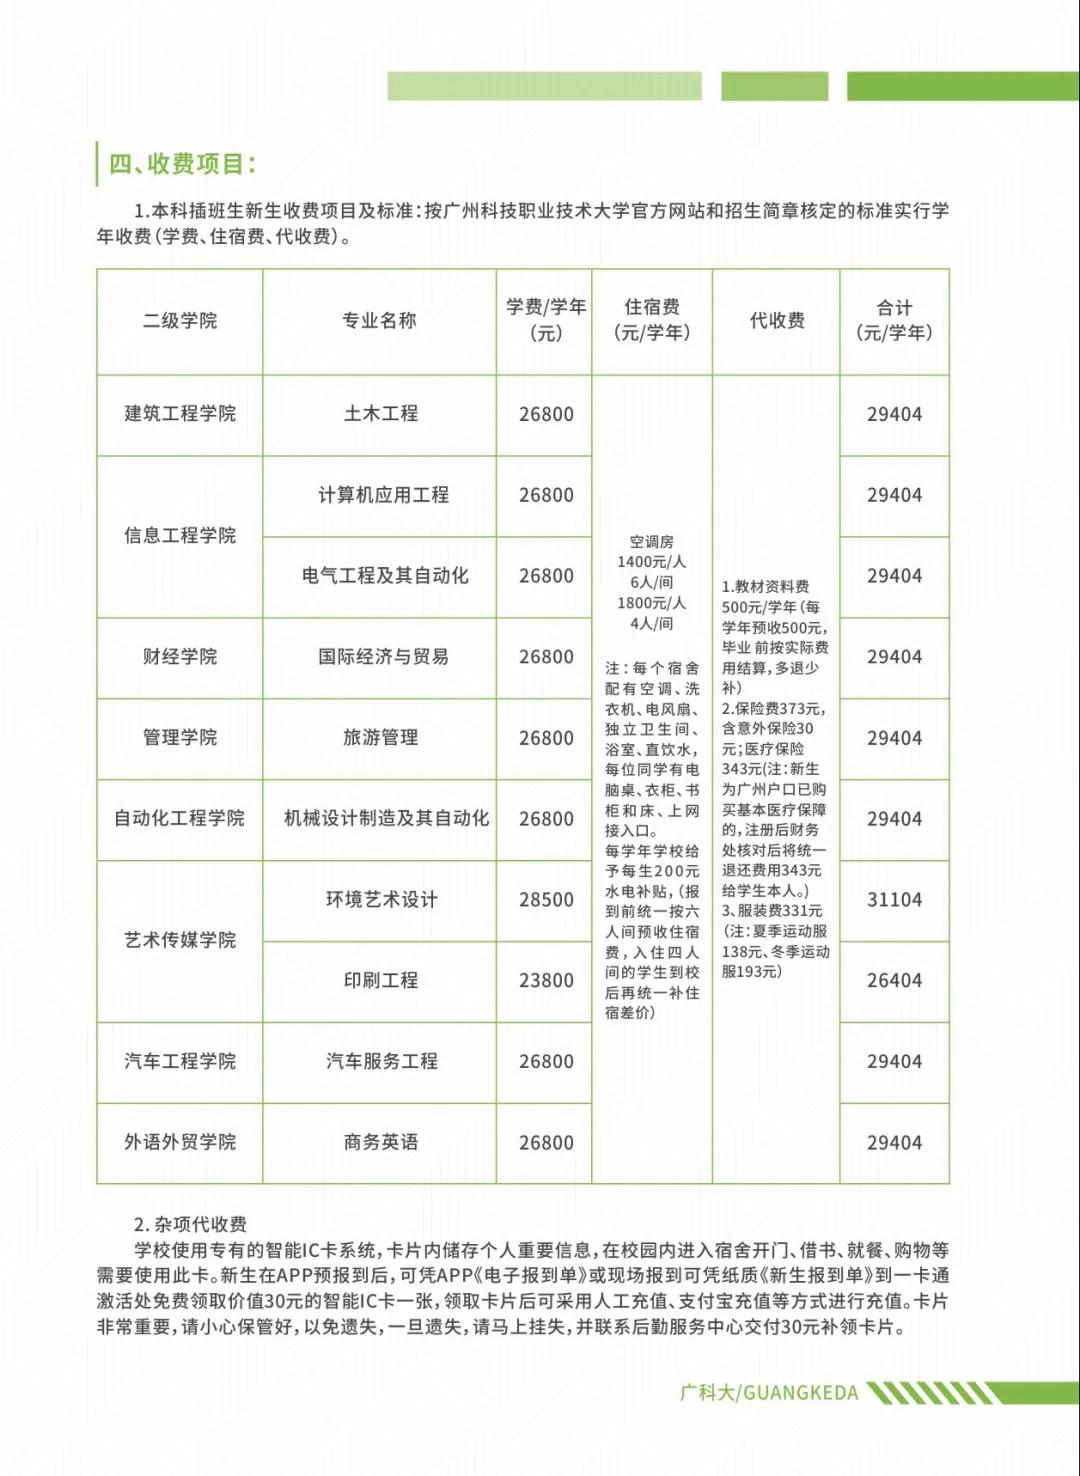 专插本学校——广州科技职业技术大学(图7)